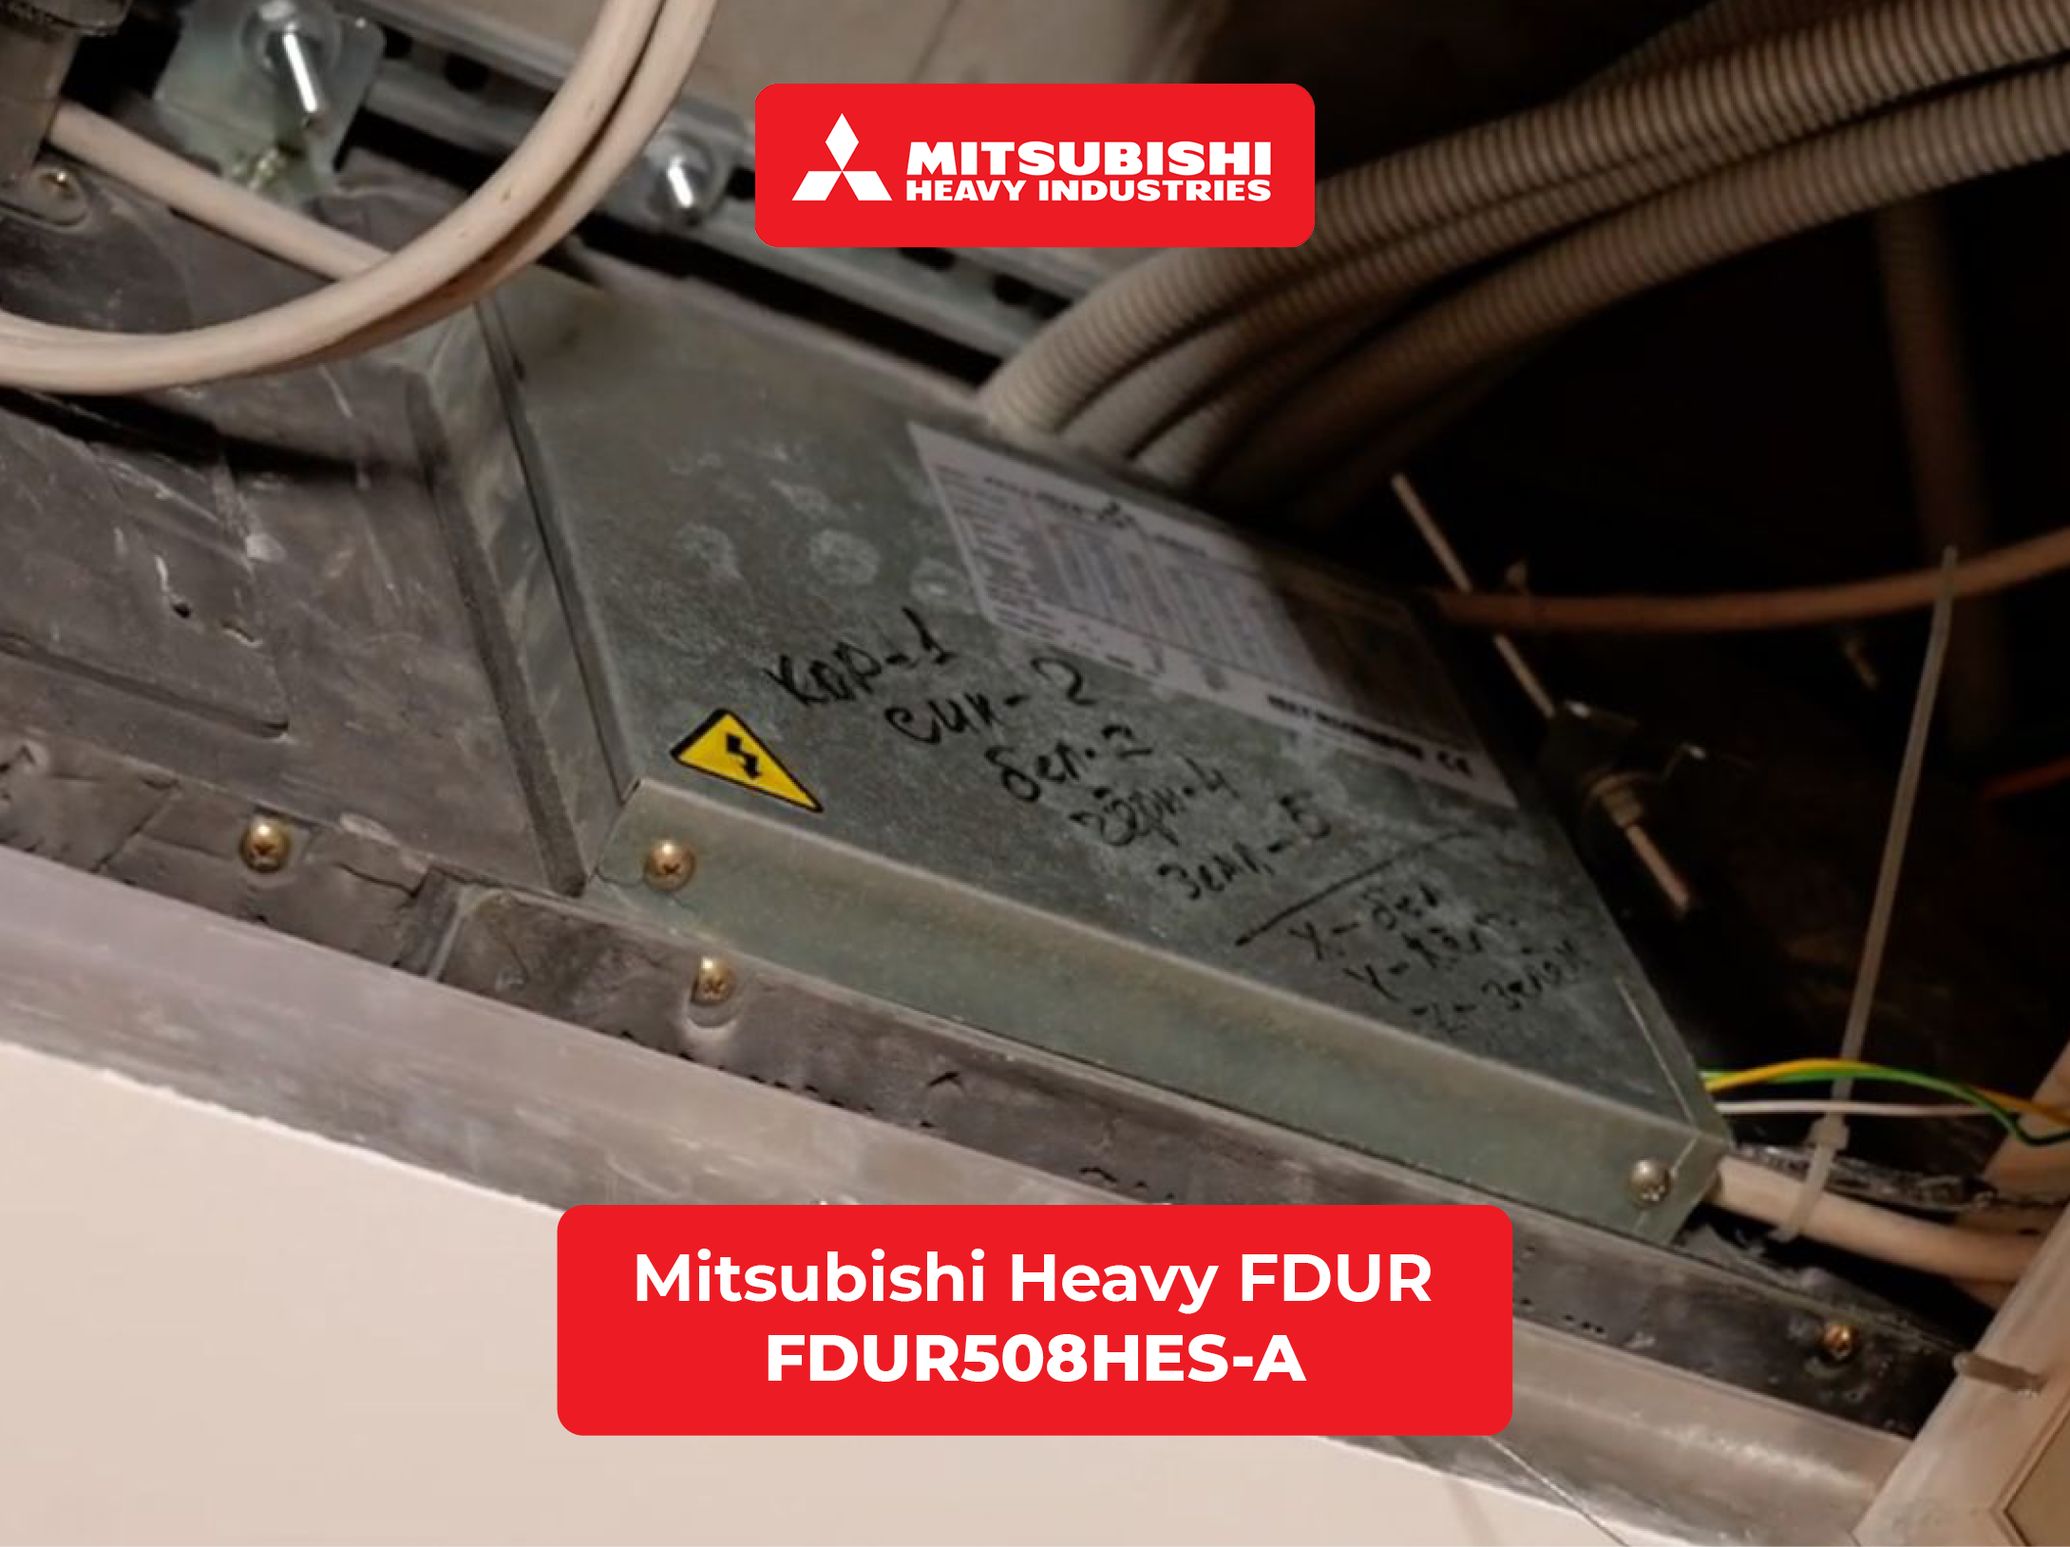 Подключаем канальный полупромышленный кондиционер Mitsubishi Heavy FDUR508HES-A с разъемом XYZ в умный дом WirenBoard через шлюз ONOKOM MH-8-MB-B.